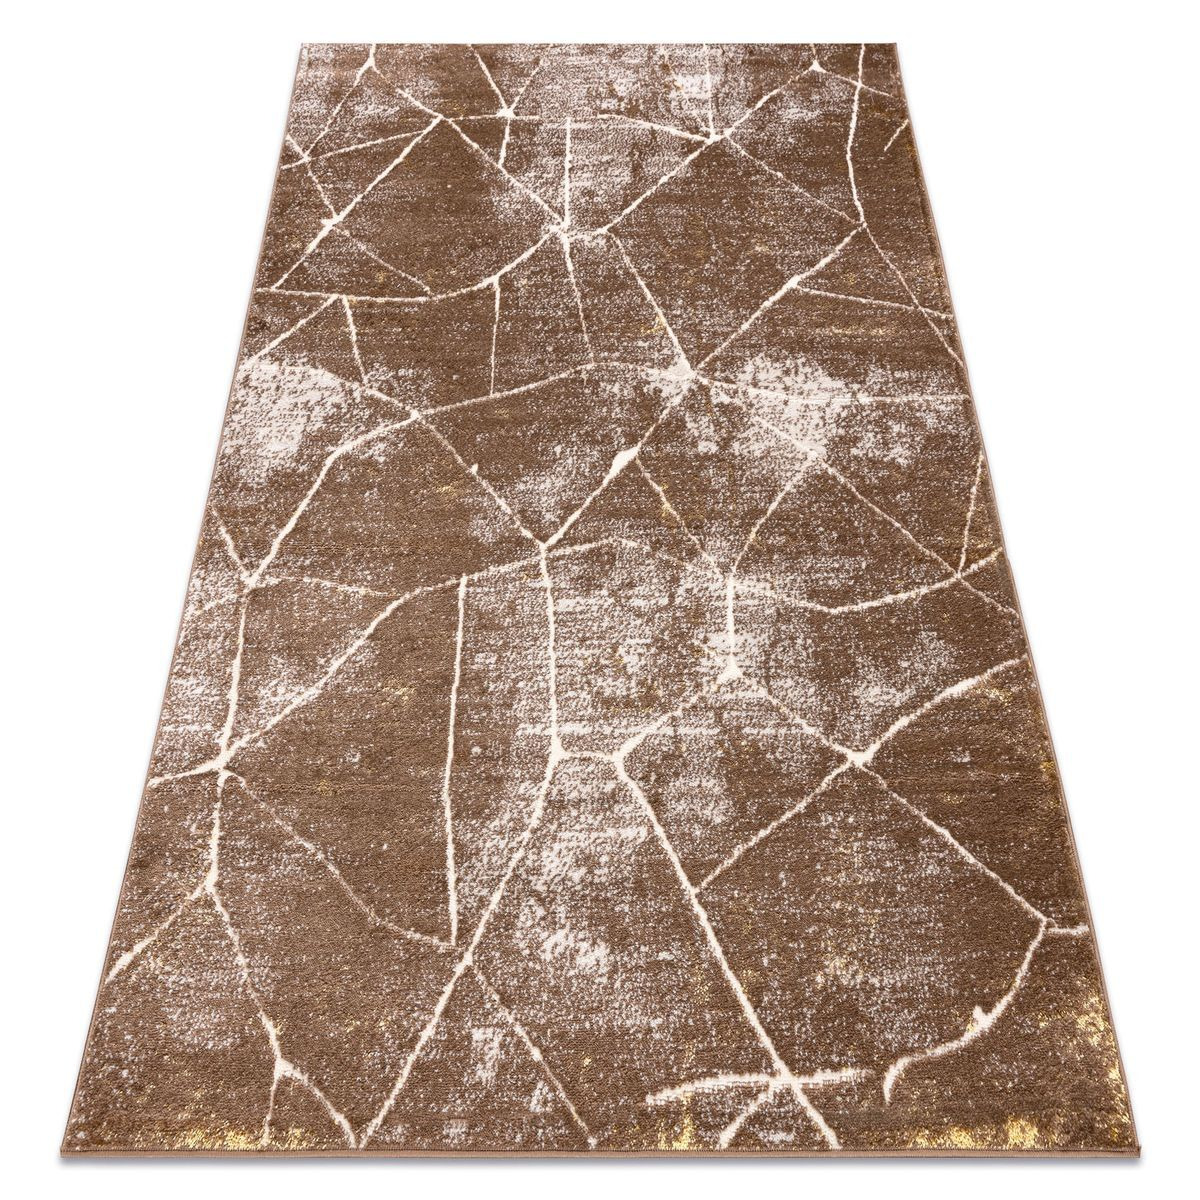 Harrisel Cookaric And Vintage Rug Dark Beige, 120x170 cm - image 1